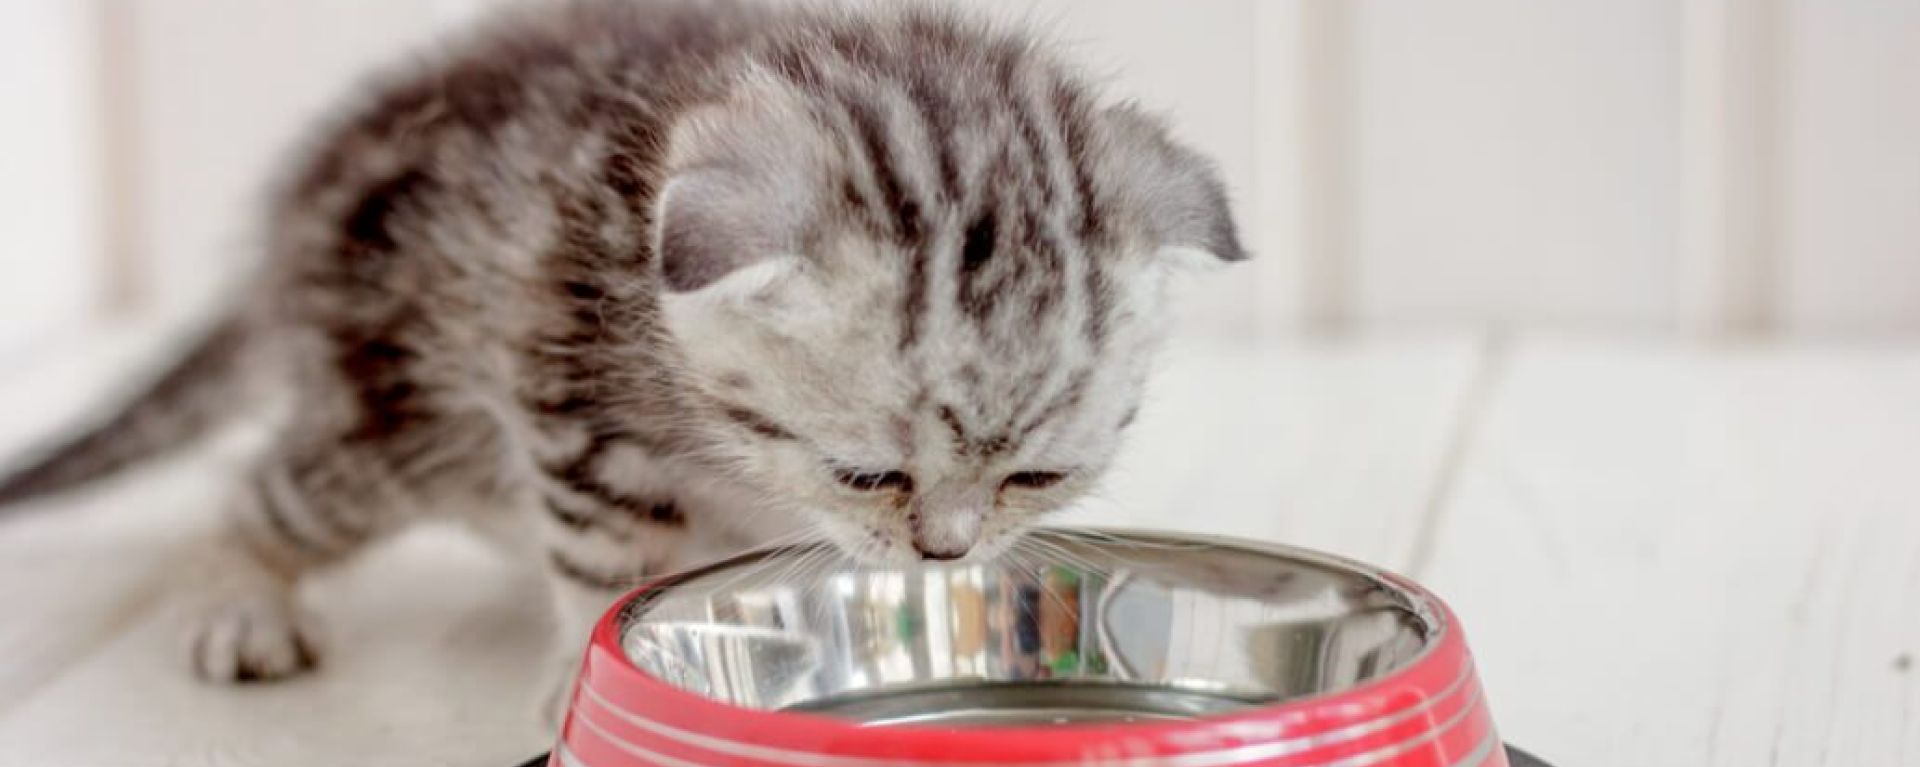 Обезвоживание у кошек: симптомы и диетологический подход